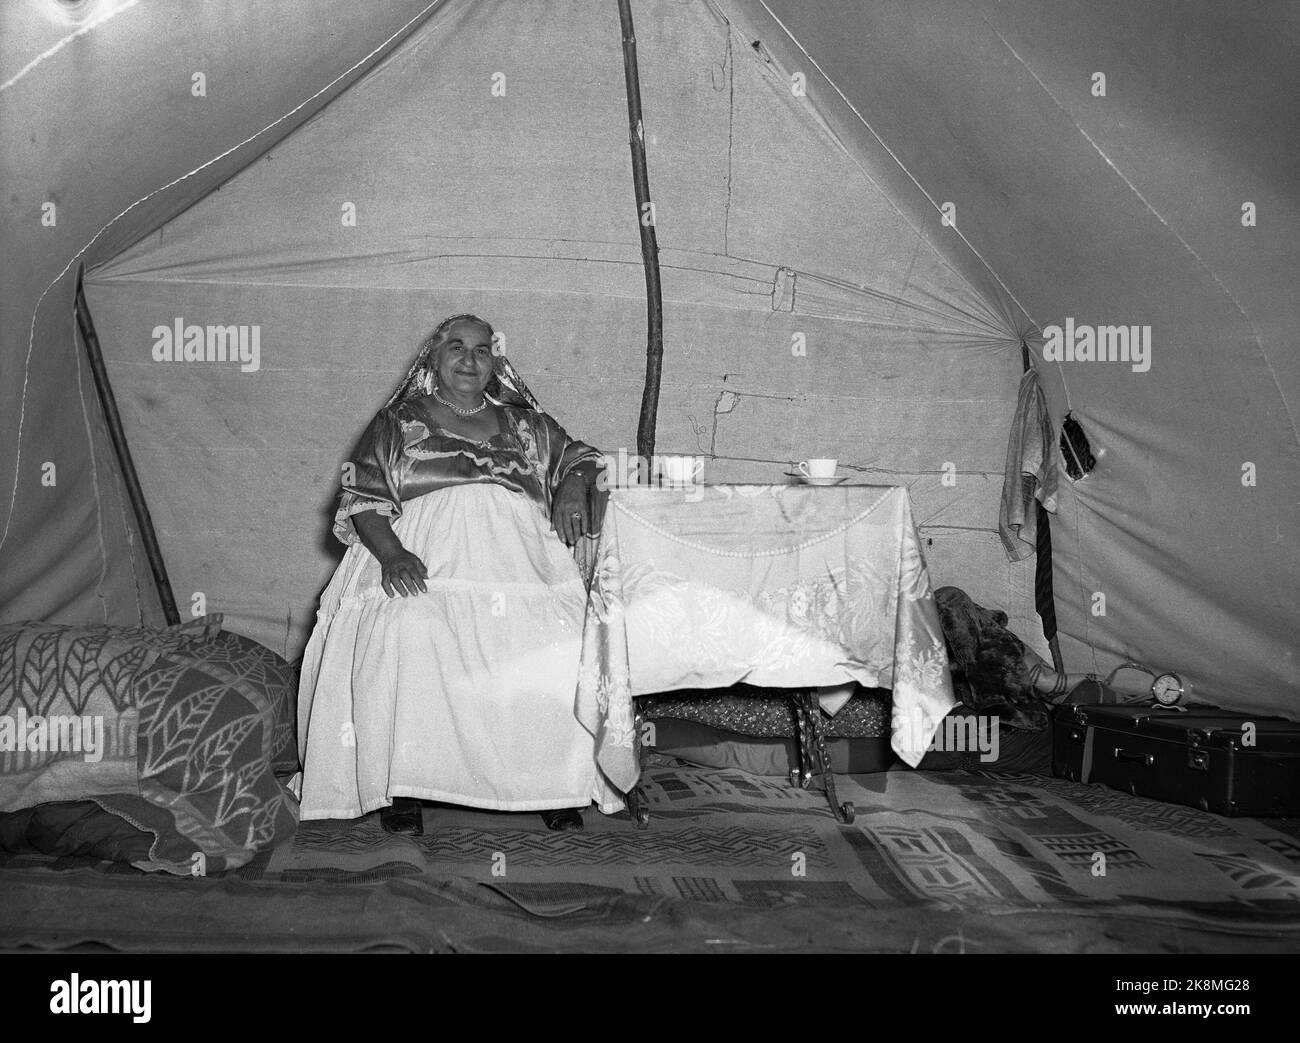 Hokksund 19590709 ancienne gitane / femme de l'espace personnes dans sa tente dans un camp tzigane à Hokksund. Photo: Knoblauch / NTB / NTB Banque D'Images